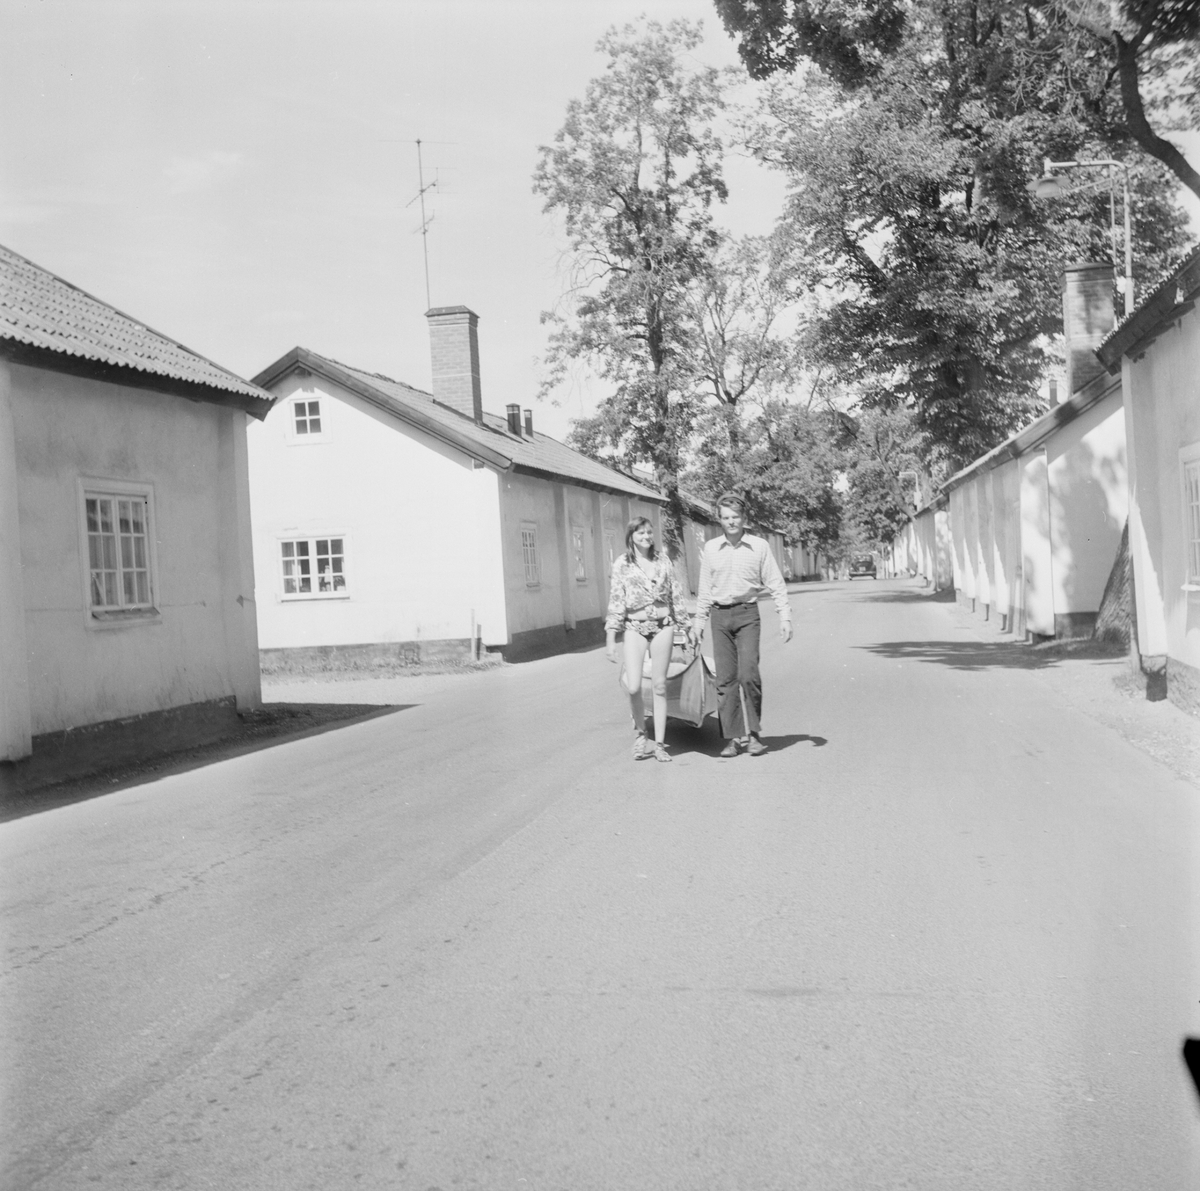 Bröllopsresa med kanot genom Söderfors, Söderfors socken, Uppland, juli 1971